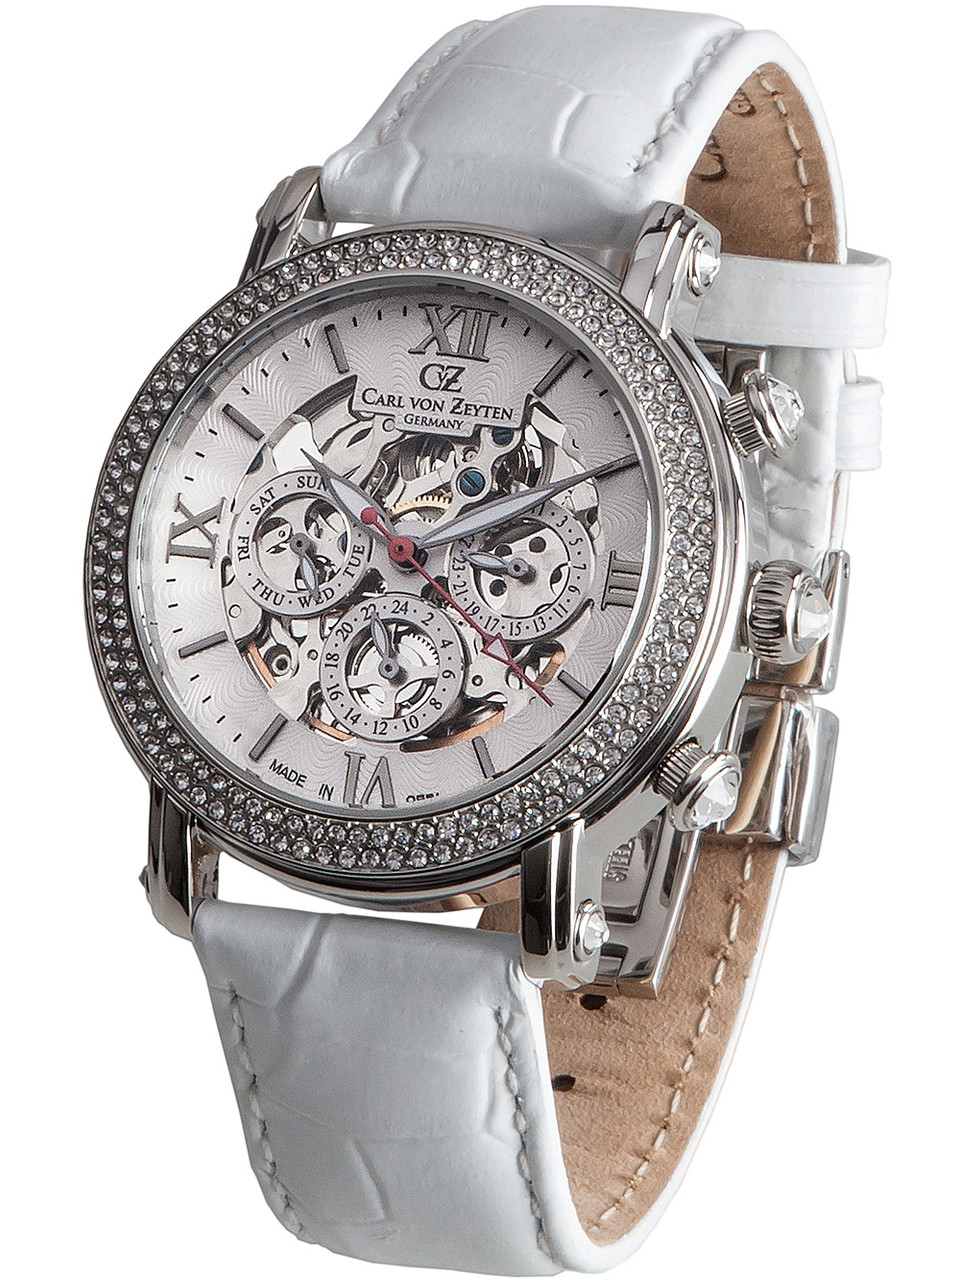 | Automatic Kniebis 40mm Genuine von owlica 5ATM Watches - Carl Zeyten CVZ0062WH